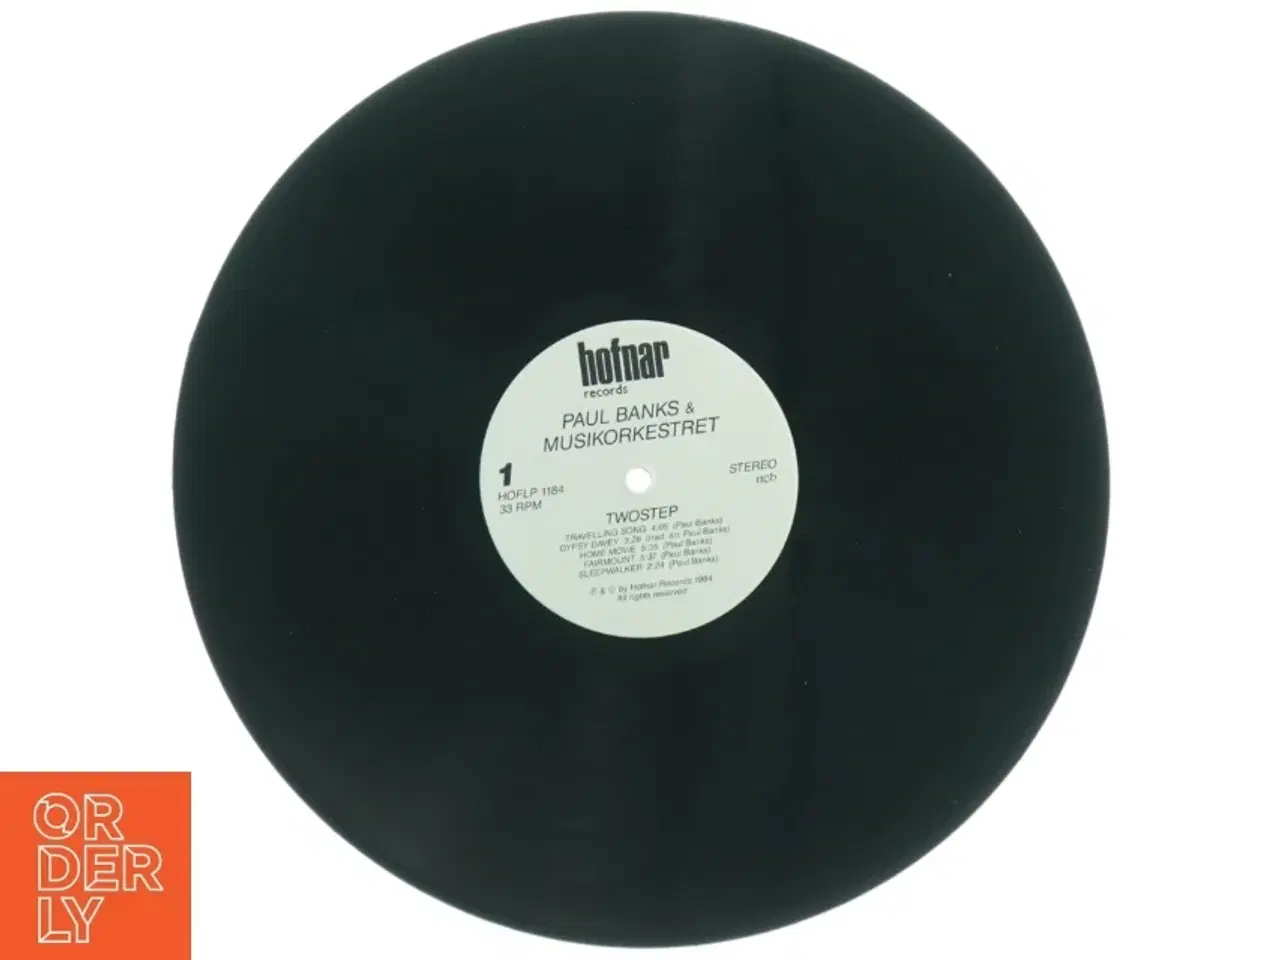 Billede 3 - Paul Banks & Musikkorkestret - Twostep LP fra Hofnar Records (str. 31 x 31 cm)